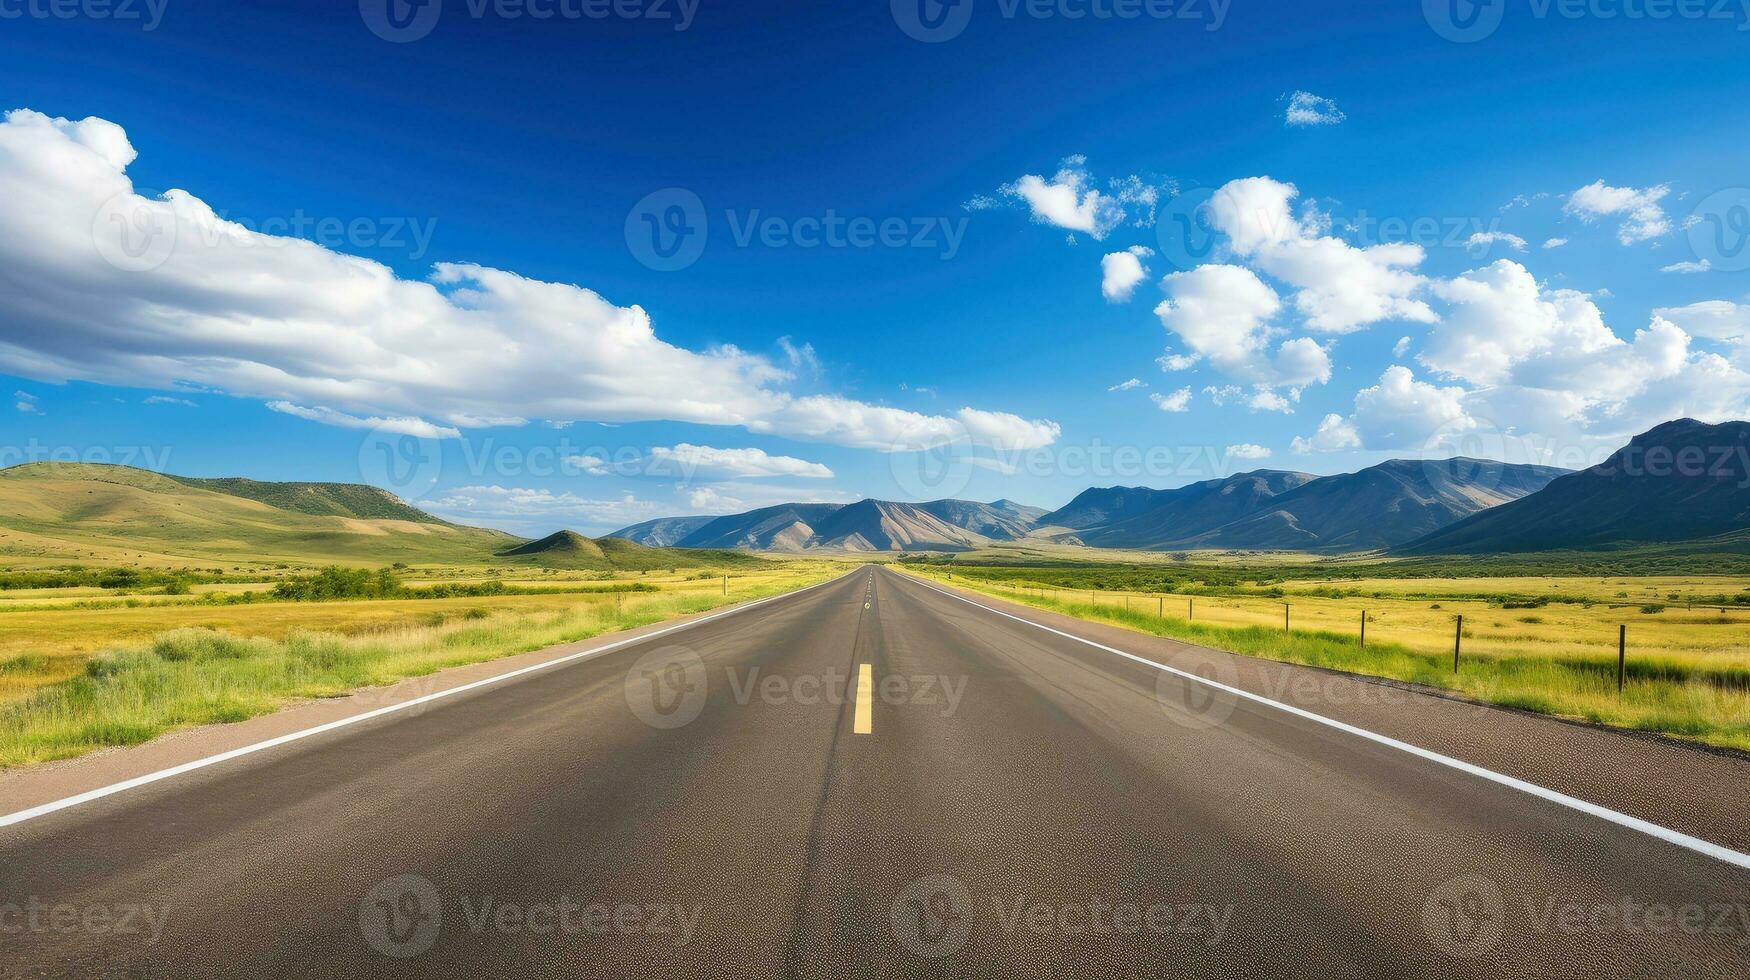 Illustration Bild von Landschaft mit Land Straße, leeren Asphalt Straße auf Blau wolkig Himmel Hintergrund. Mehrfarbig beschwingt draußen horizontal Bild, generativ ai Illustration foto